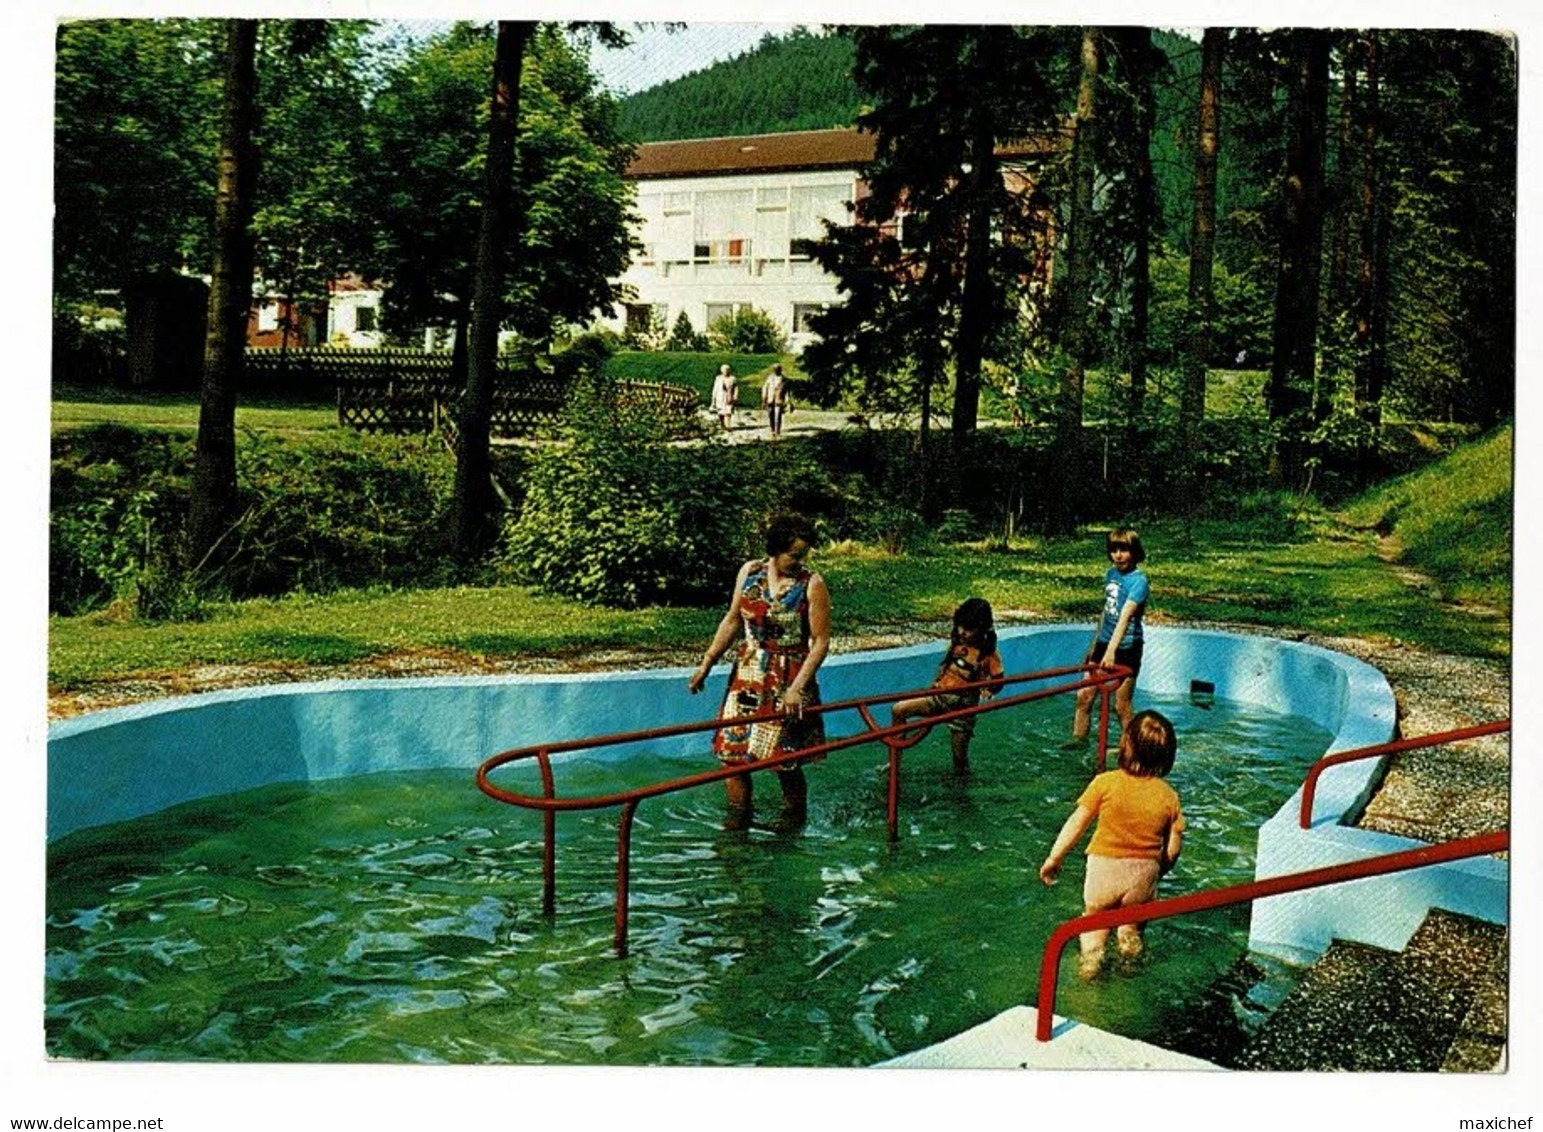 Bergstadt Wildemann - Das" Klein-Tirol" Im Aberharz - Wassertreten Im Kurpark Mit Kurhaus Im Hintergrund - 1980 - Oberharz